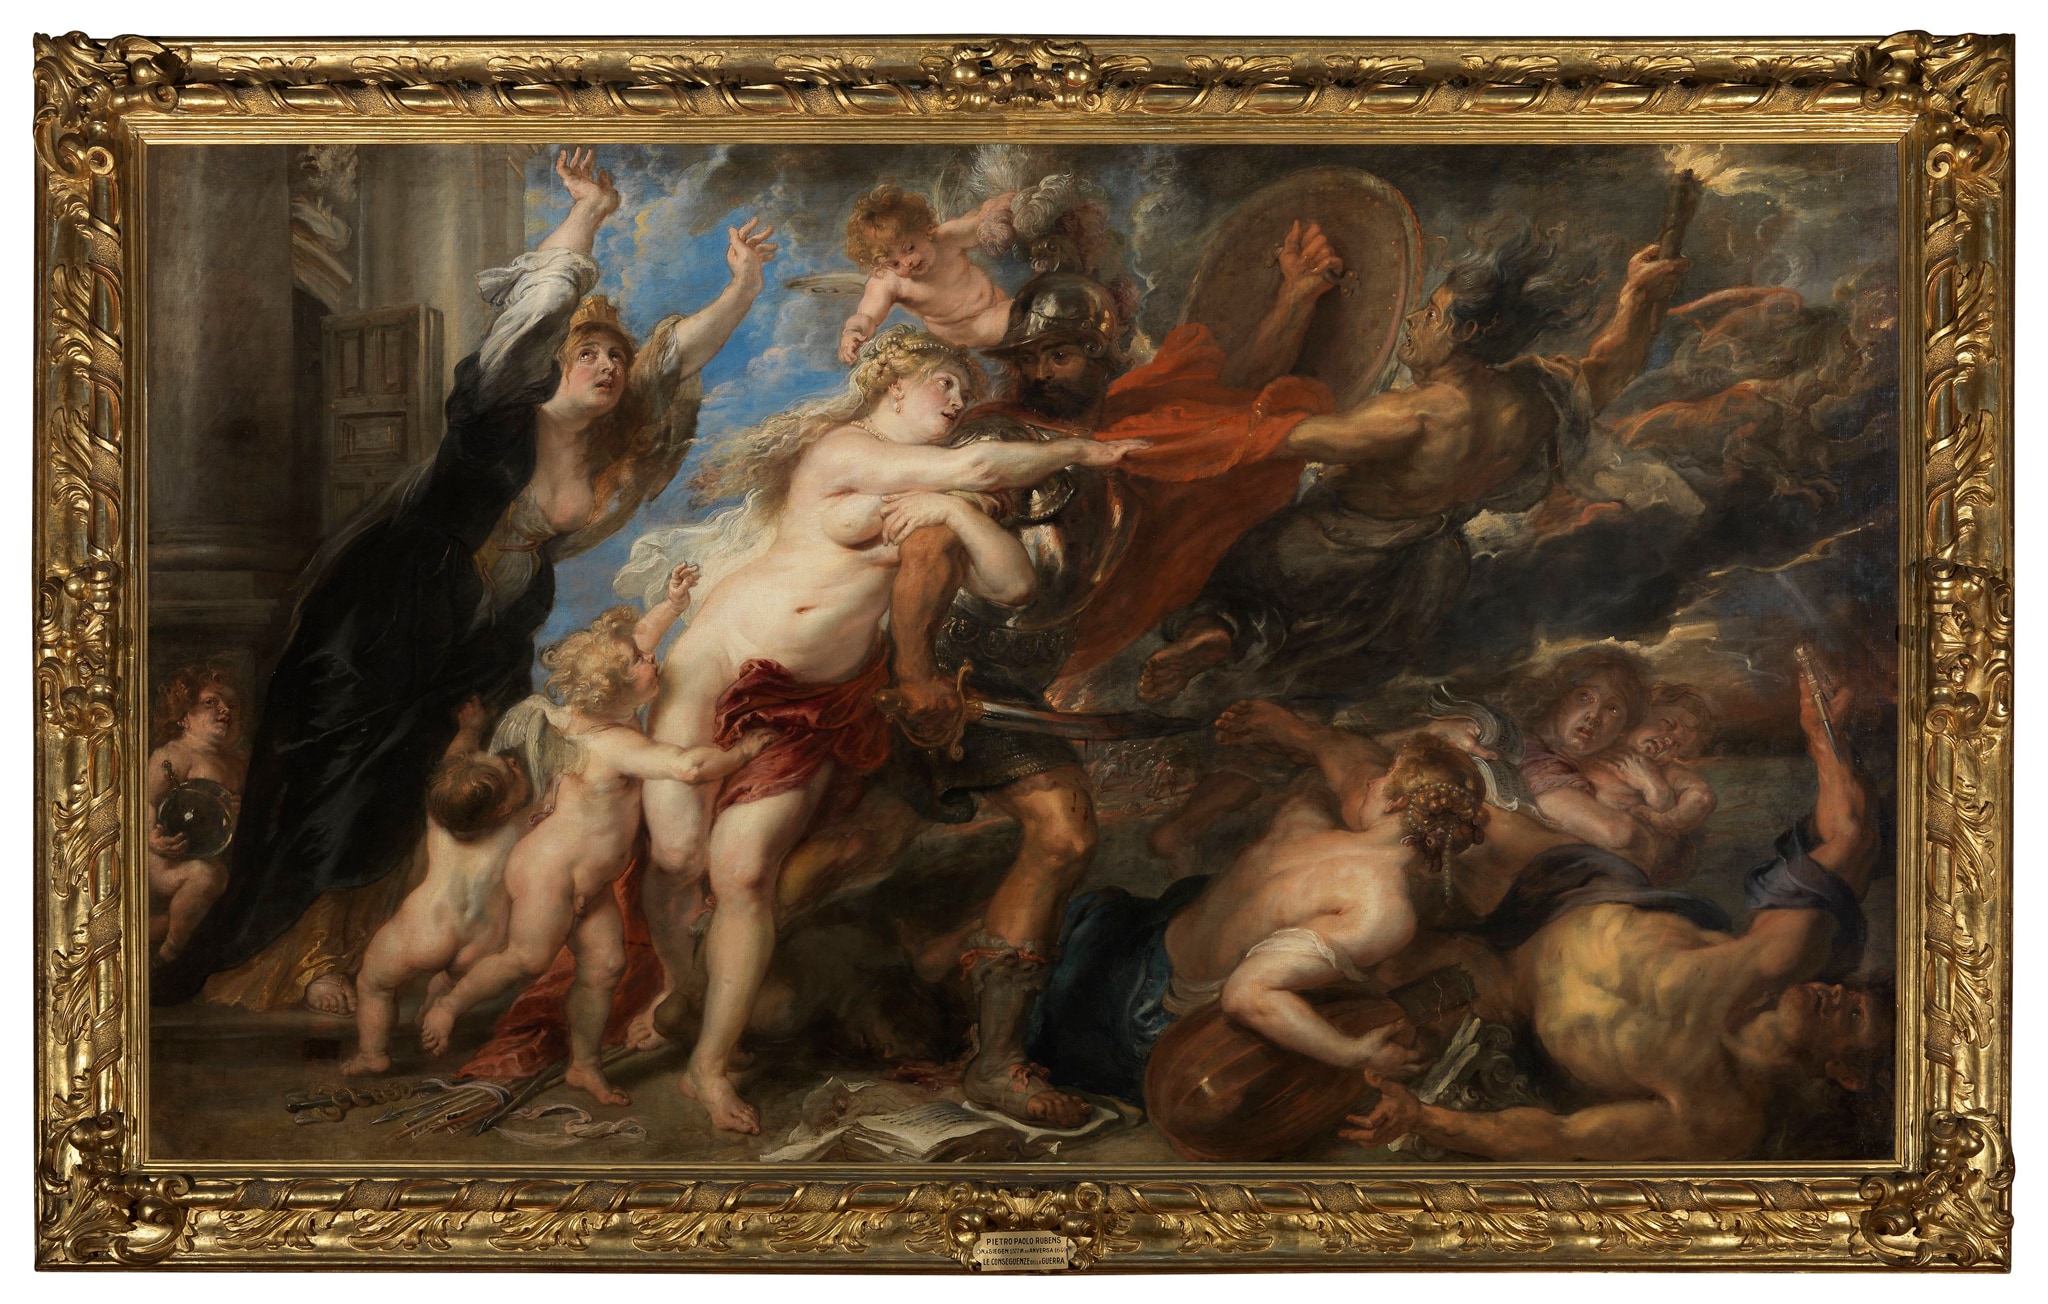 Rubens, Le conseguenze della guerra, 1637-1638 ca., olio su tela, 206x305cm. Conservato nella Galleria Palatina, il soggetto mitologico allegorico nasce dalle riflessioni maturate dall'artista durante la Guerra dei Trent'anni. Il quadro, completa un percorso iniziato con l'Allegoria della Pace, dipinta da Rubens nel 1630 per Carlo I d'Inghilterra.